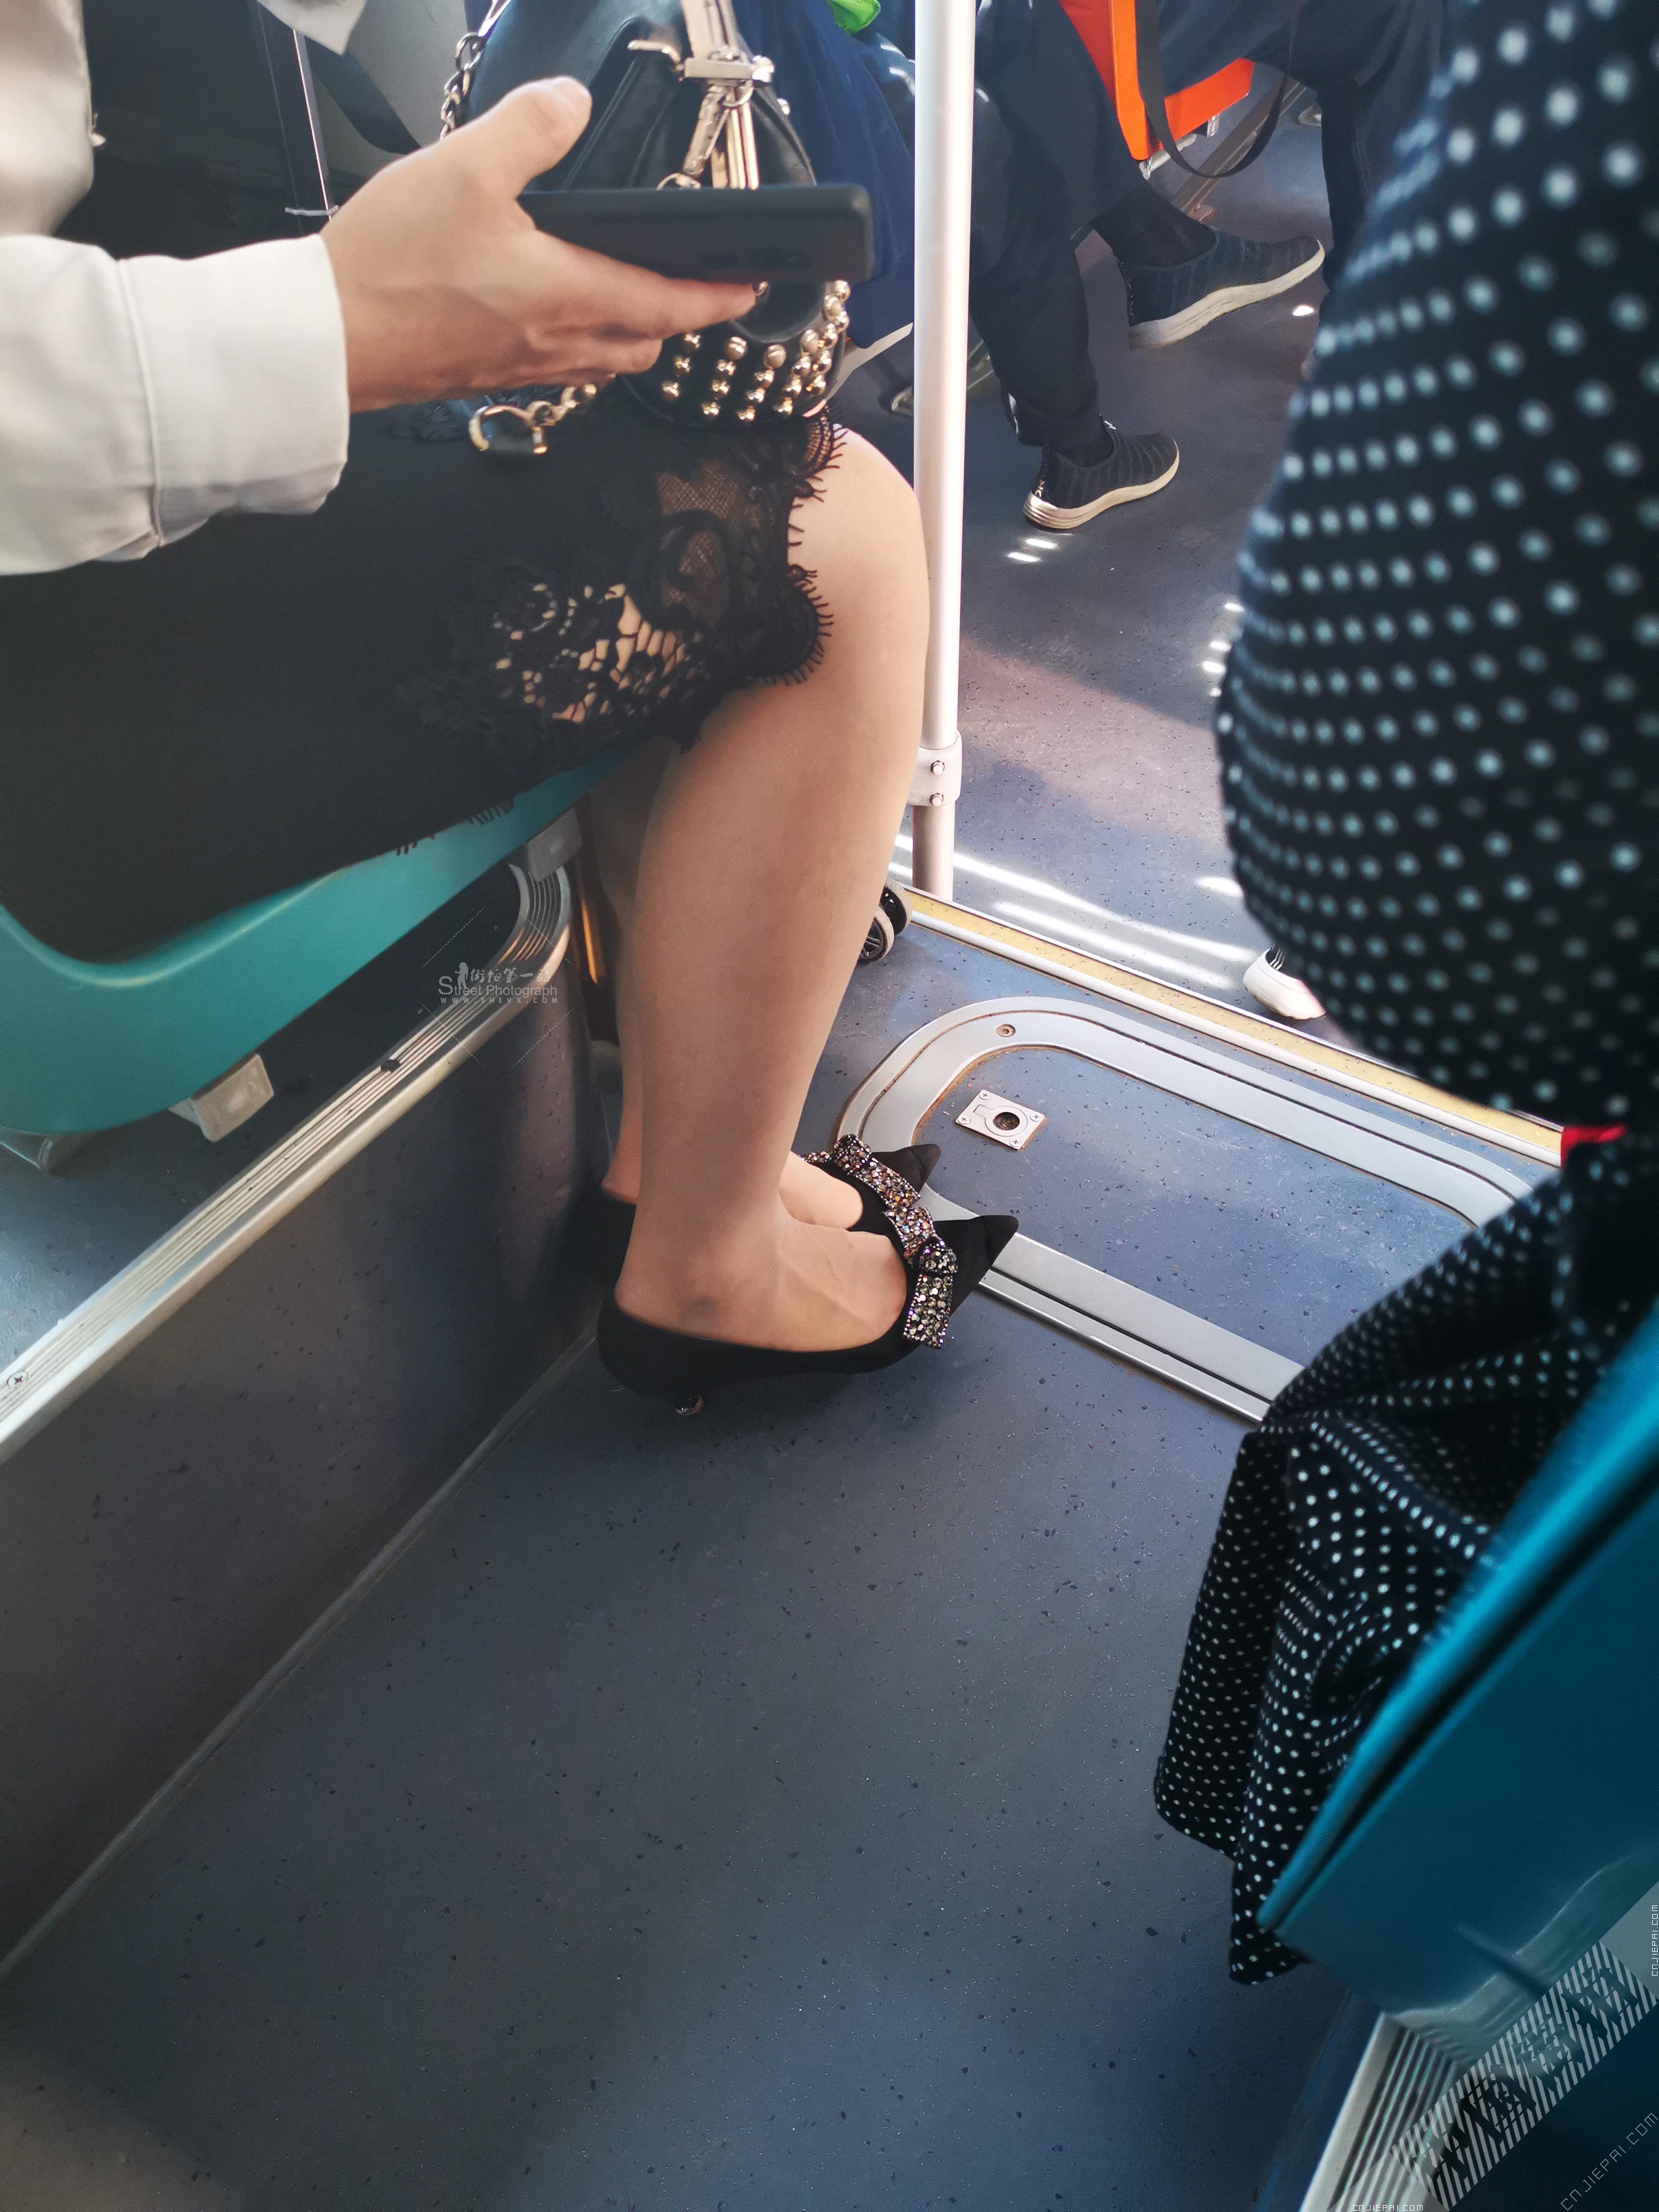 公交车旁边座位上的黑色蕾丝边裙子少妇 图1